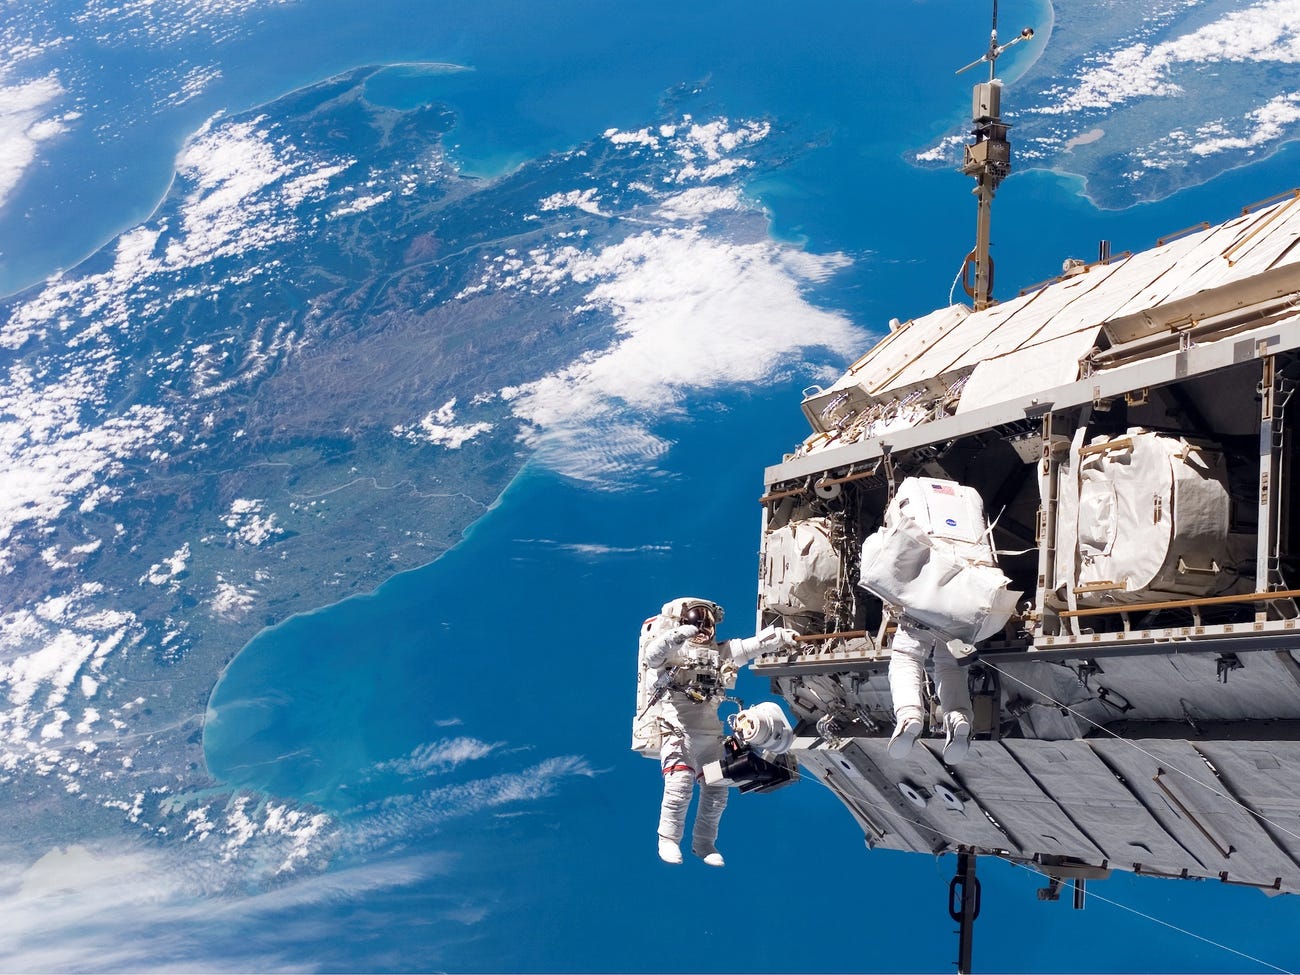 Các nhà du hành vũ trụ Robert L. Curbeam Jr., Christer Fuglesang tham gia một hoạt động ở ngoài tàu vũ trụ, phía dưới là New Zealand và eo biển Cook ở châu Á Thái bình dương. Nguồn: NASA.